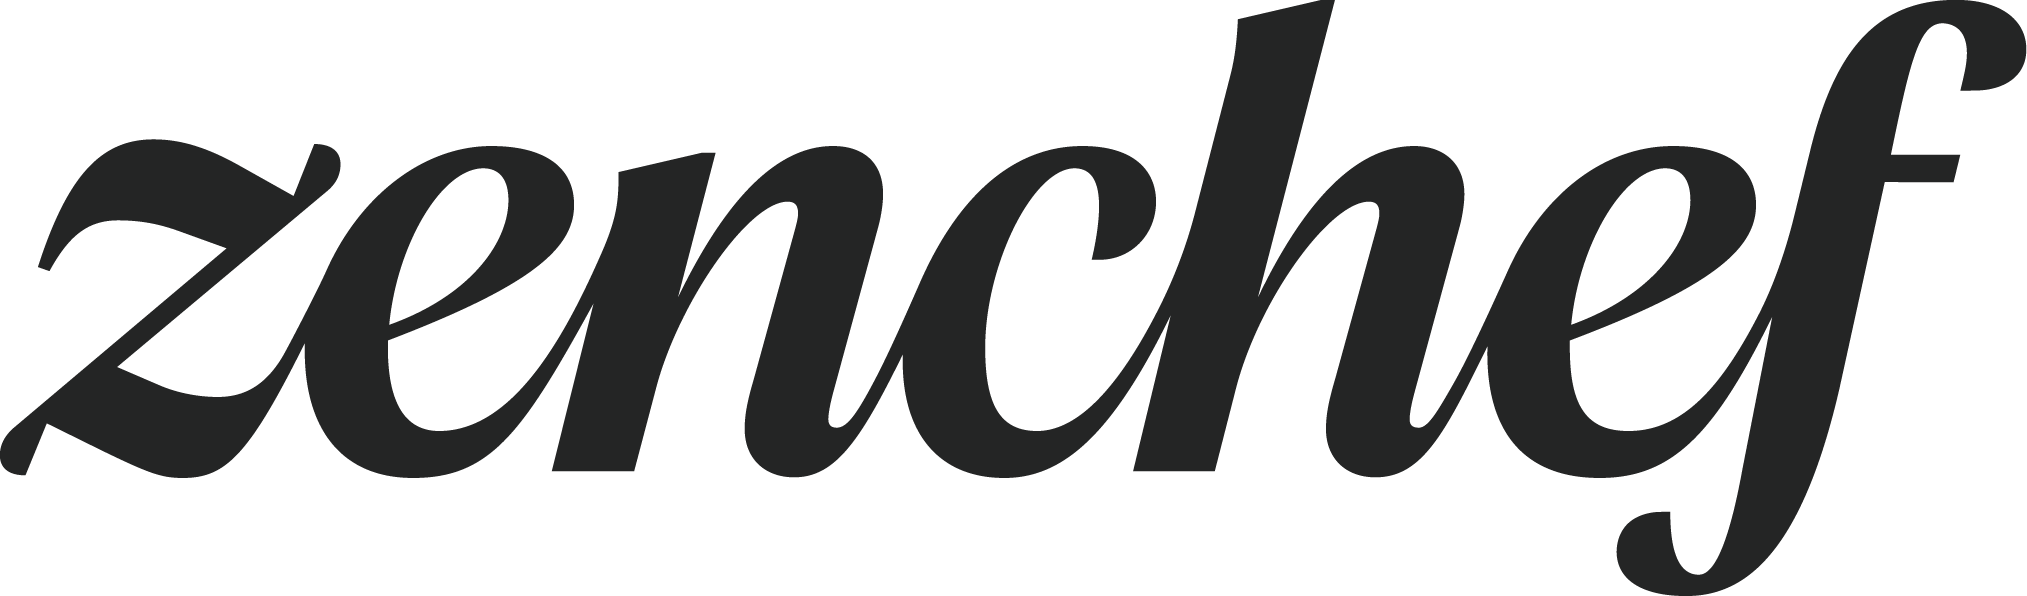 Zenchef_Logo_Charcoal-nomarge